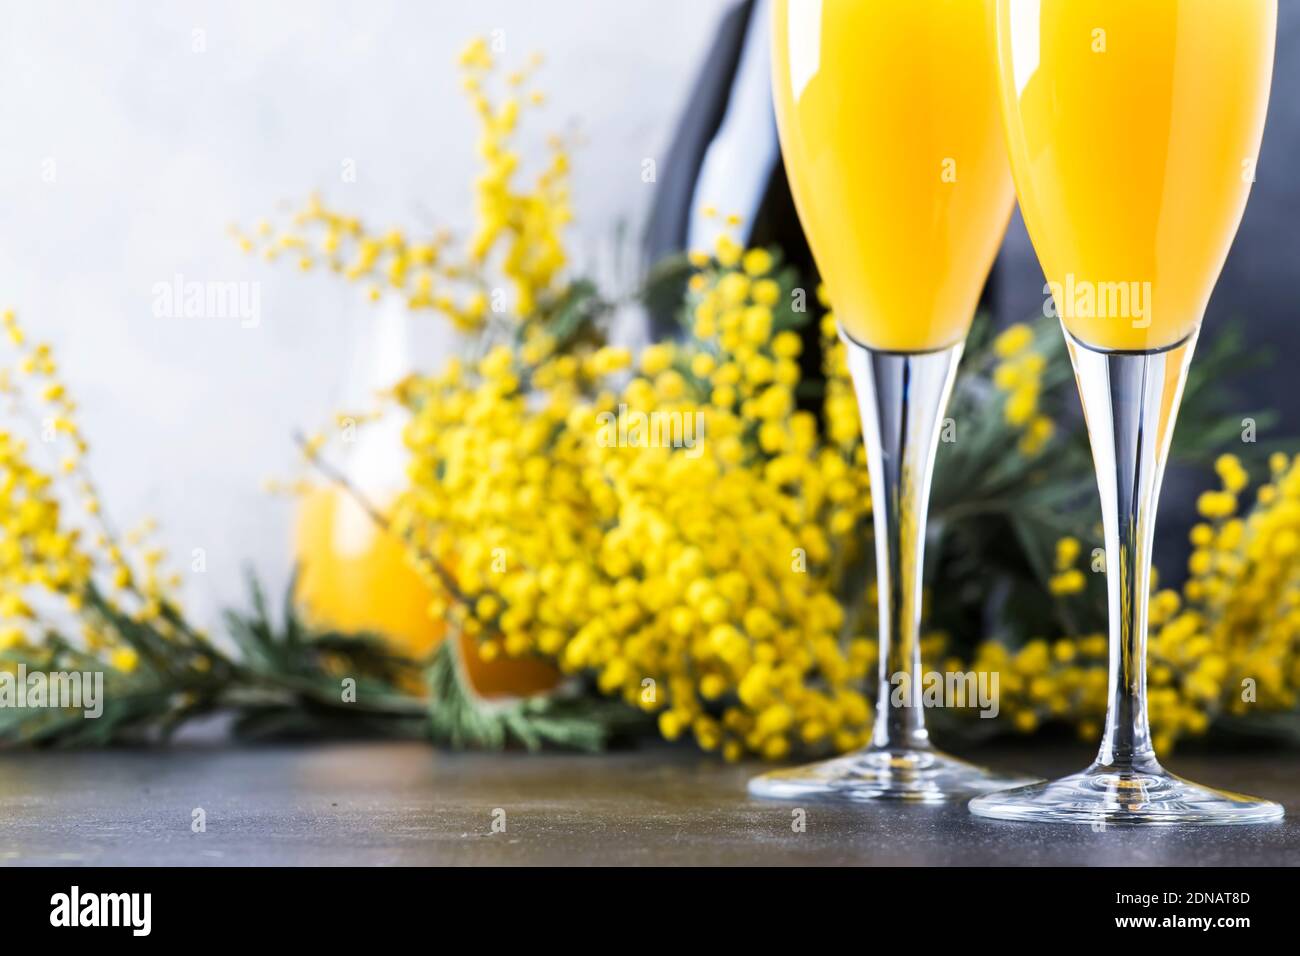 Cóctel de alcohol de primavera mimosa con jugo de naranja y champagne seco  frío o vino espumoso en copas, barra gris de fondo con flores de yelow  Fotografía de stock - Alamy